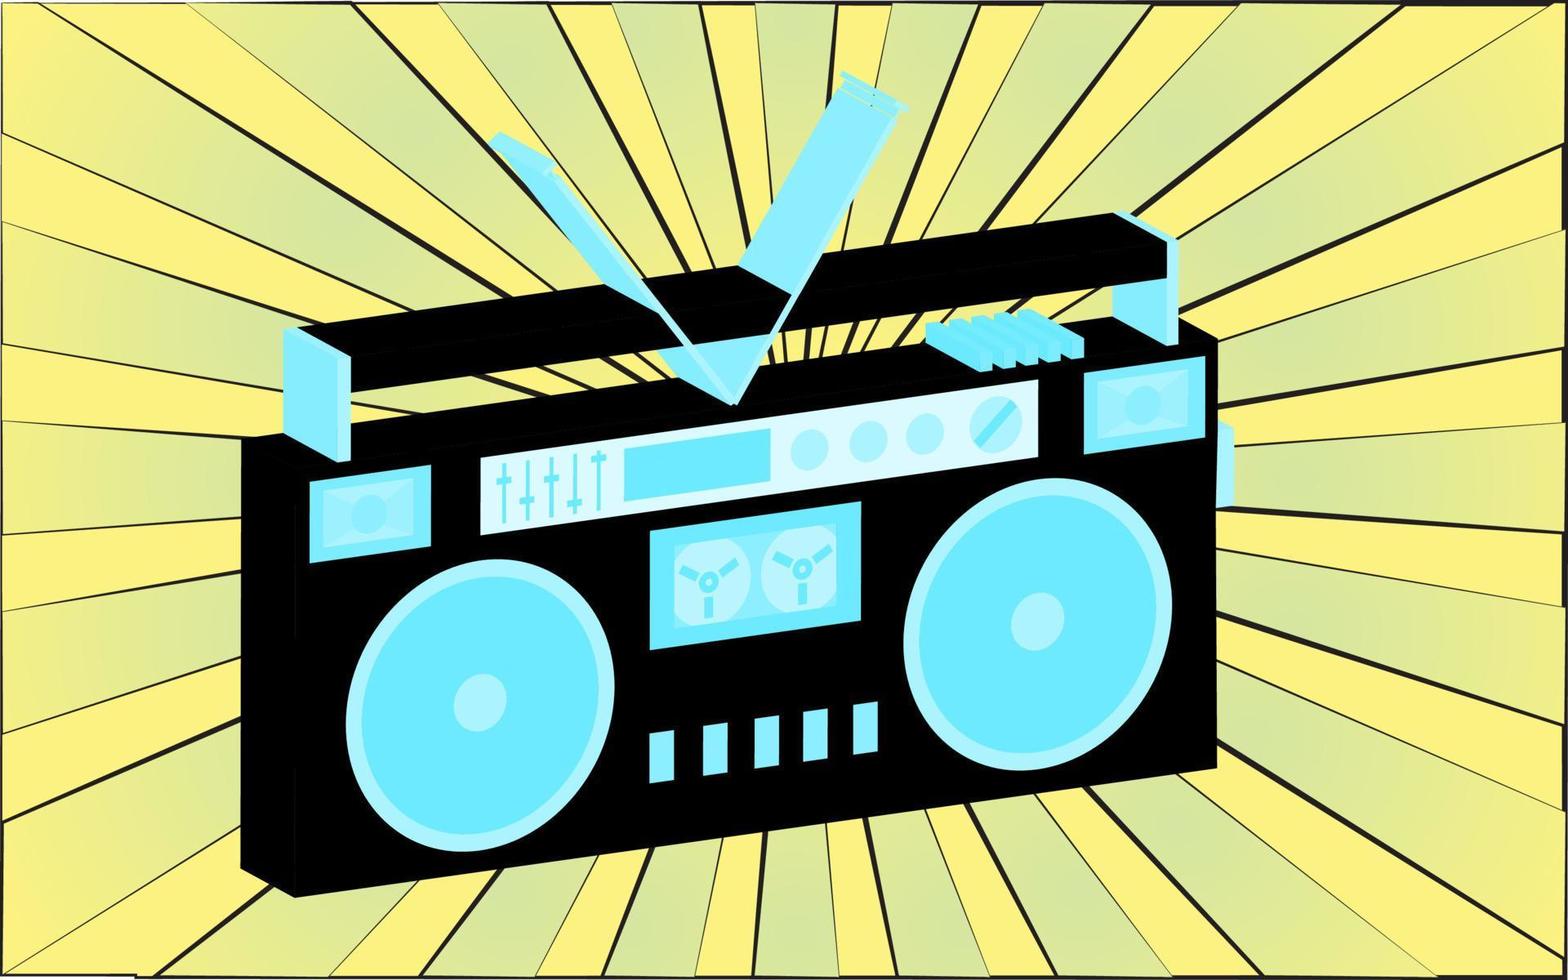 retro oud antiek muziek- audio opnemer van de jaren 70, jaren 80, jaren 90, jaren 2000 tegen een achtergrond van abstract geel stralen. vector illustratie